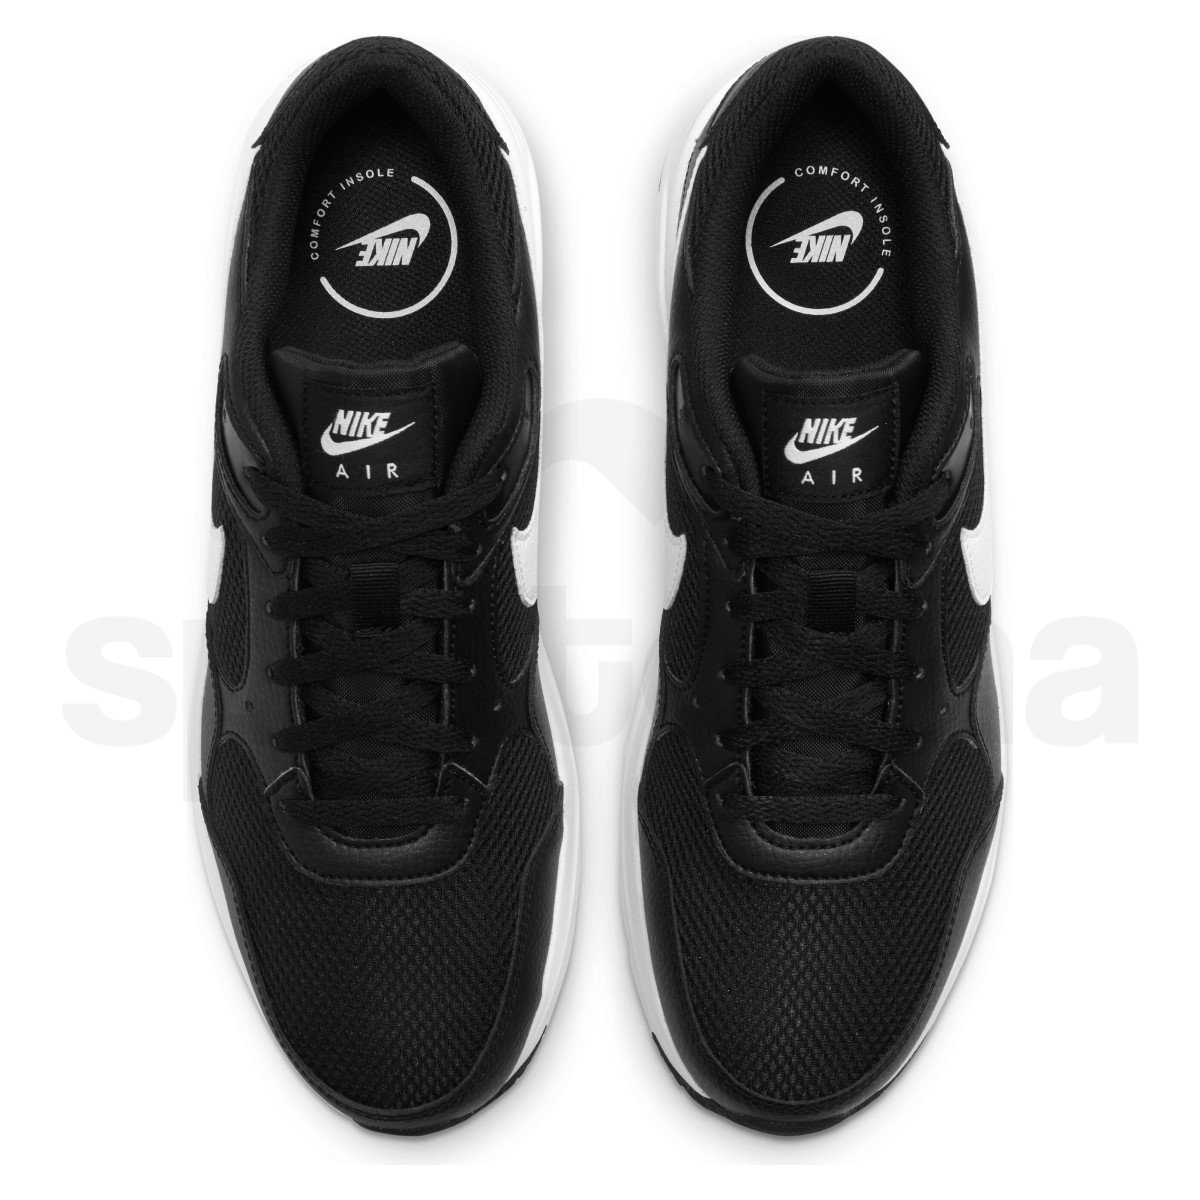 Obuv Nike Air Max SC M - černá/bílá